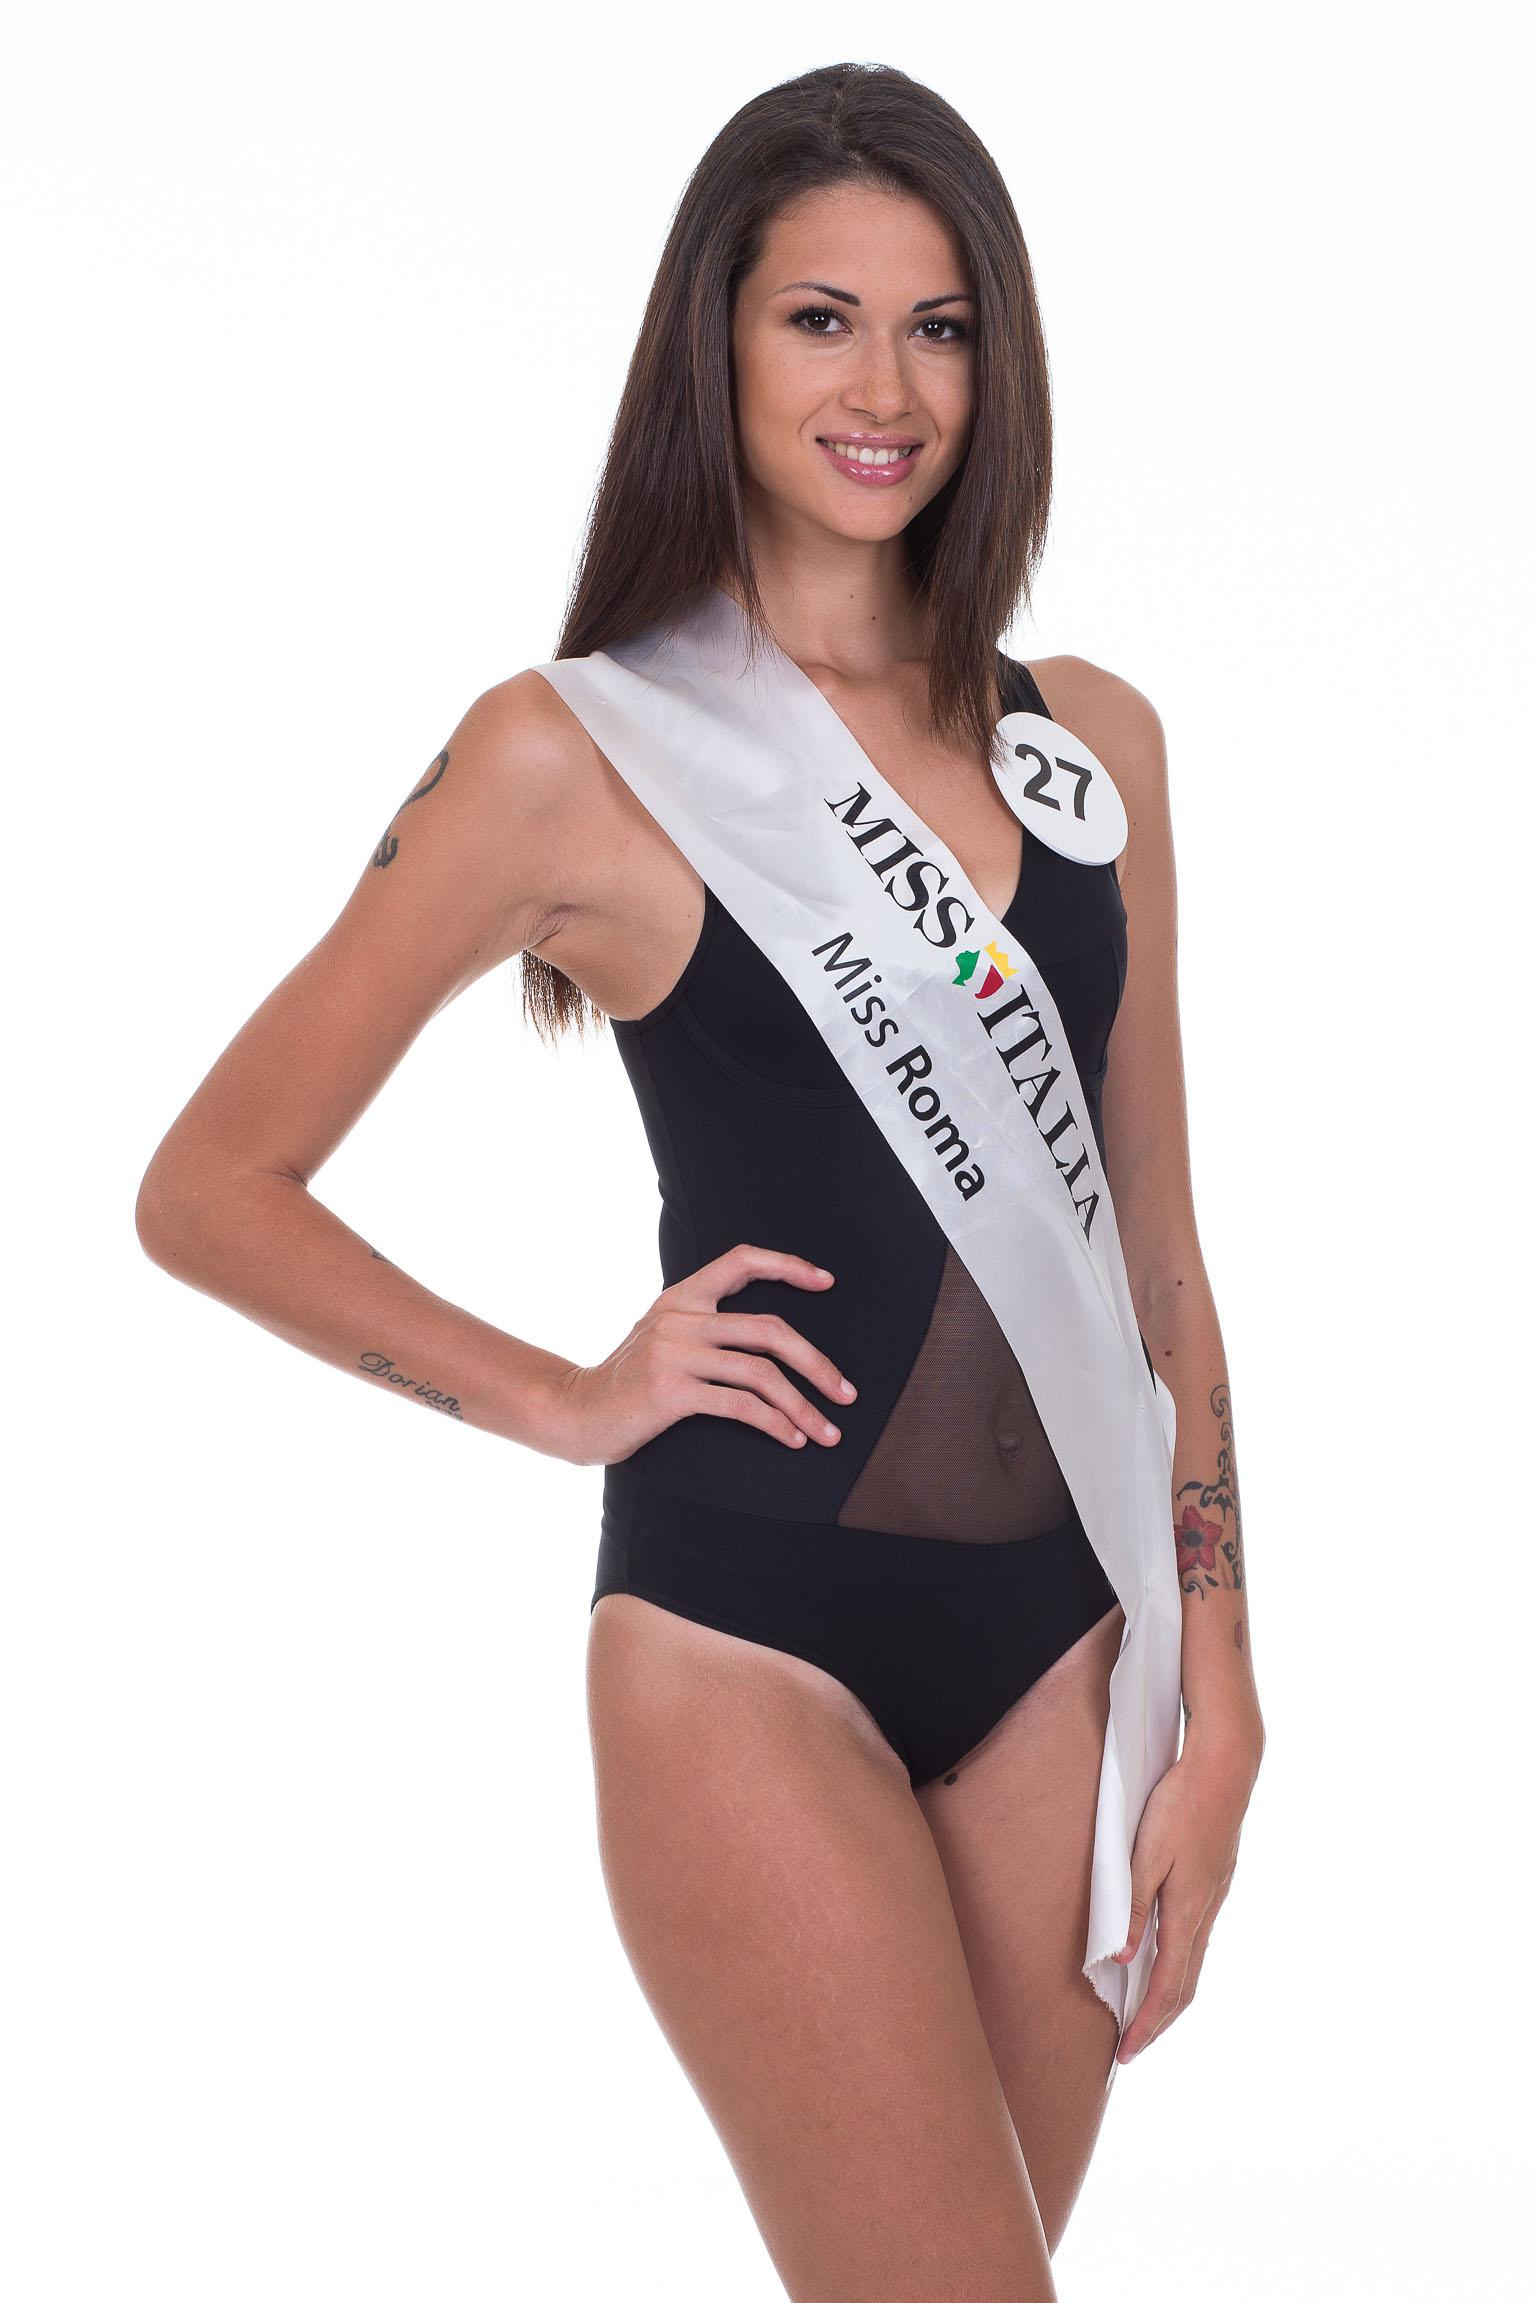 27. Miss Roma 2016